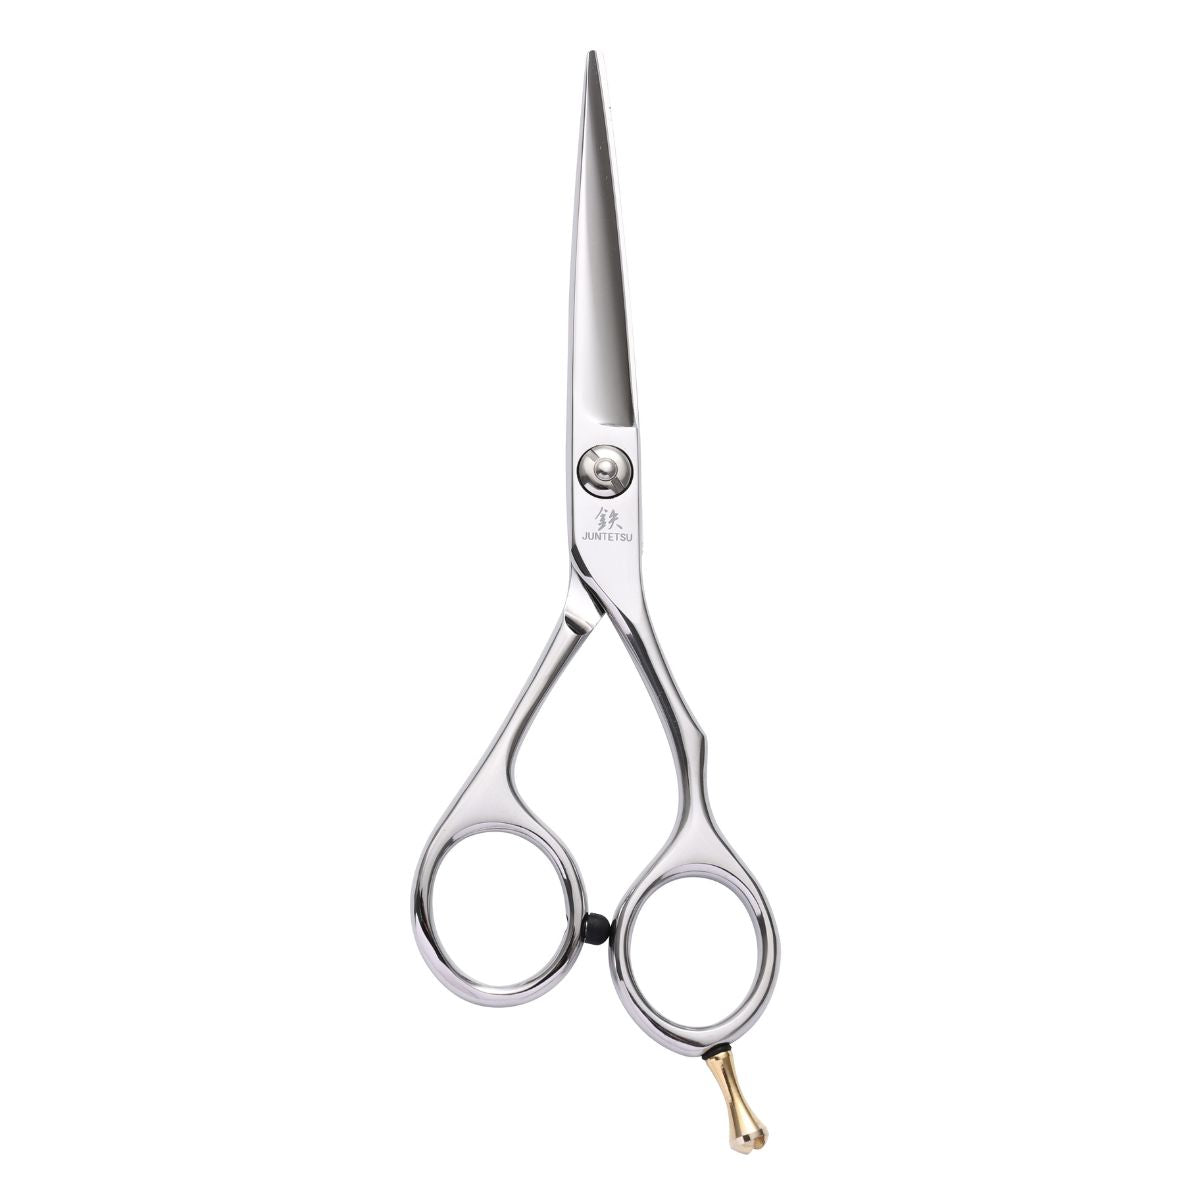 Juntetsu Classic II Hair Cutting Scissors